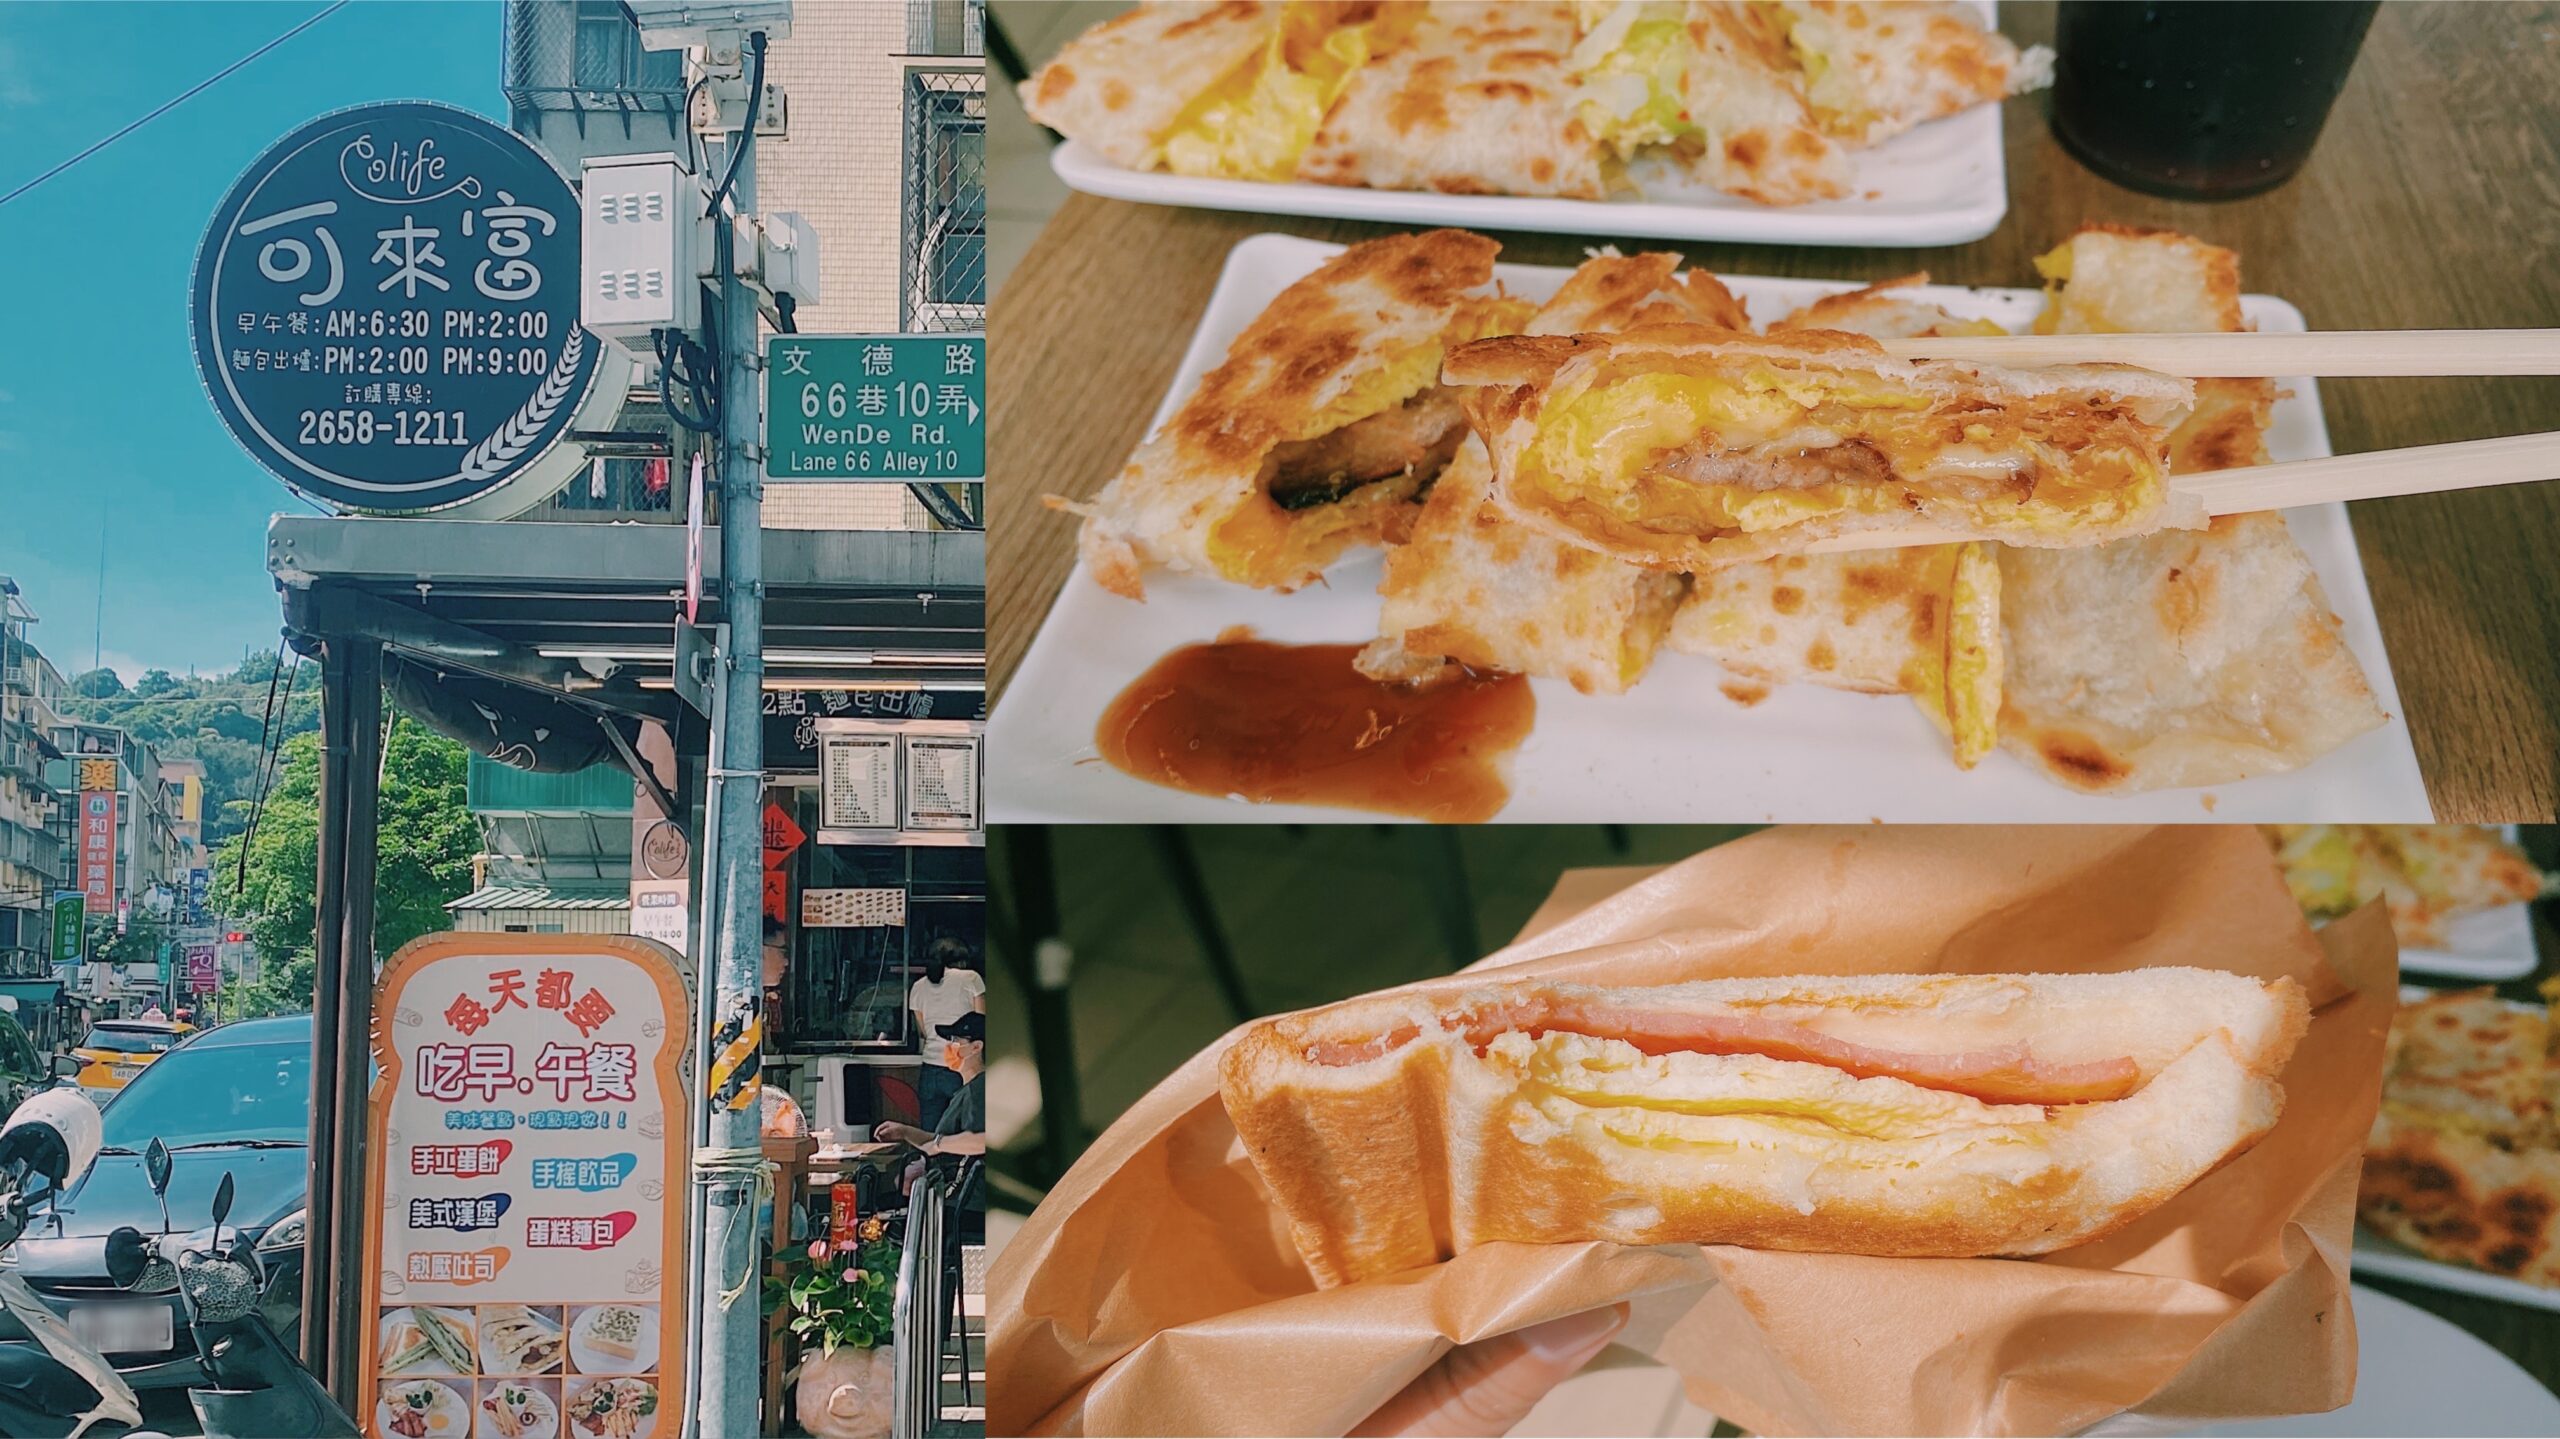 【內湖美食】可來富麵包蛋餅店 喜歡酥脆口感蛋餅 不能錯過的早餐店 (菜單) @Achu的日常